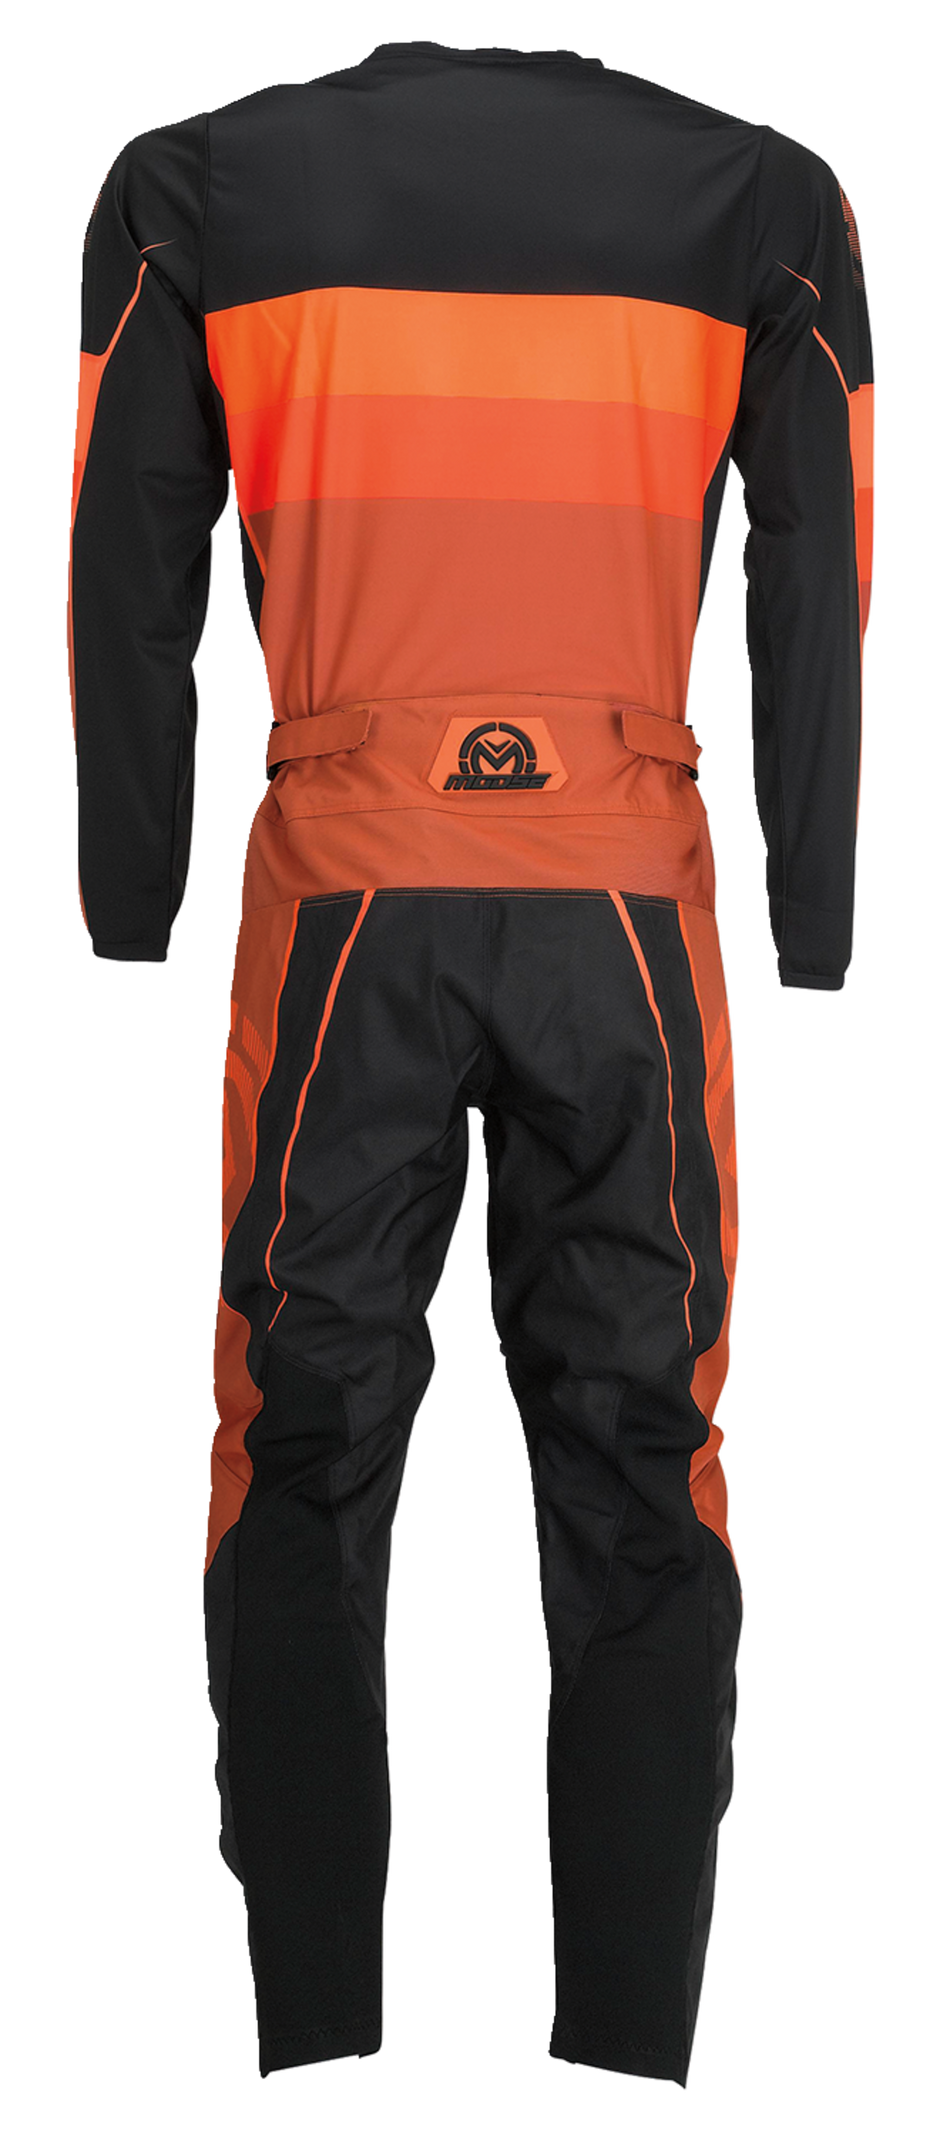 Camiseta MOOSE RACING Qualifier® - Naranja/Gris - 4XL 2910-7202 